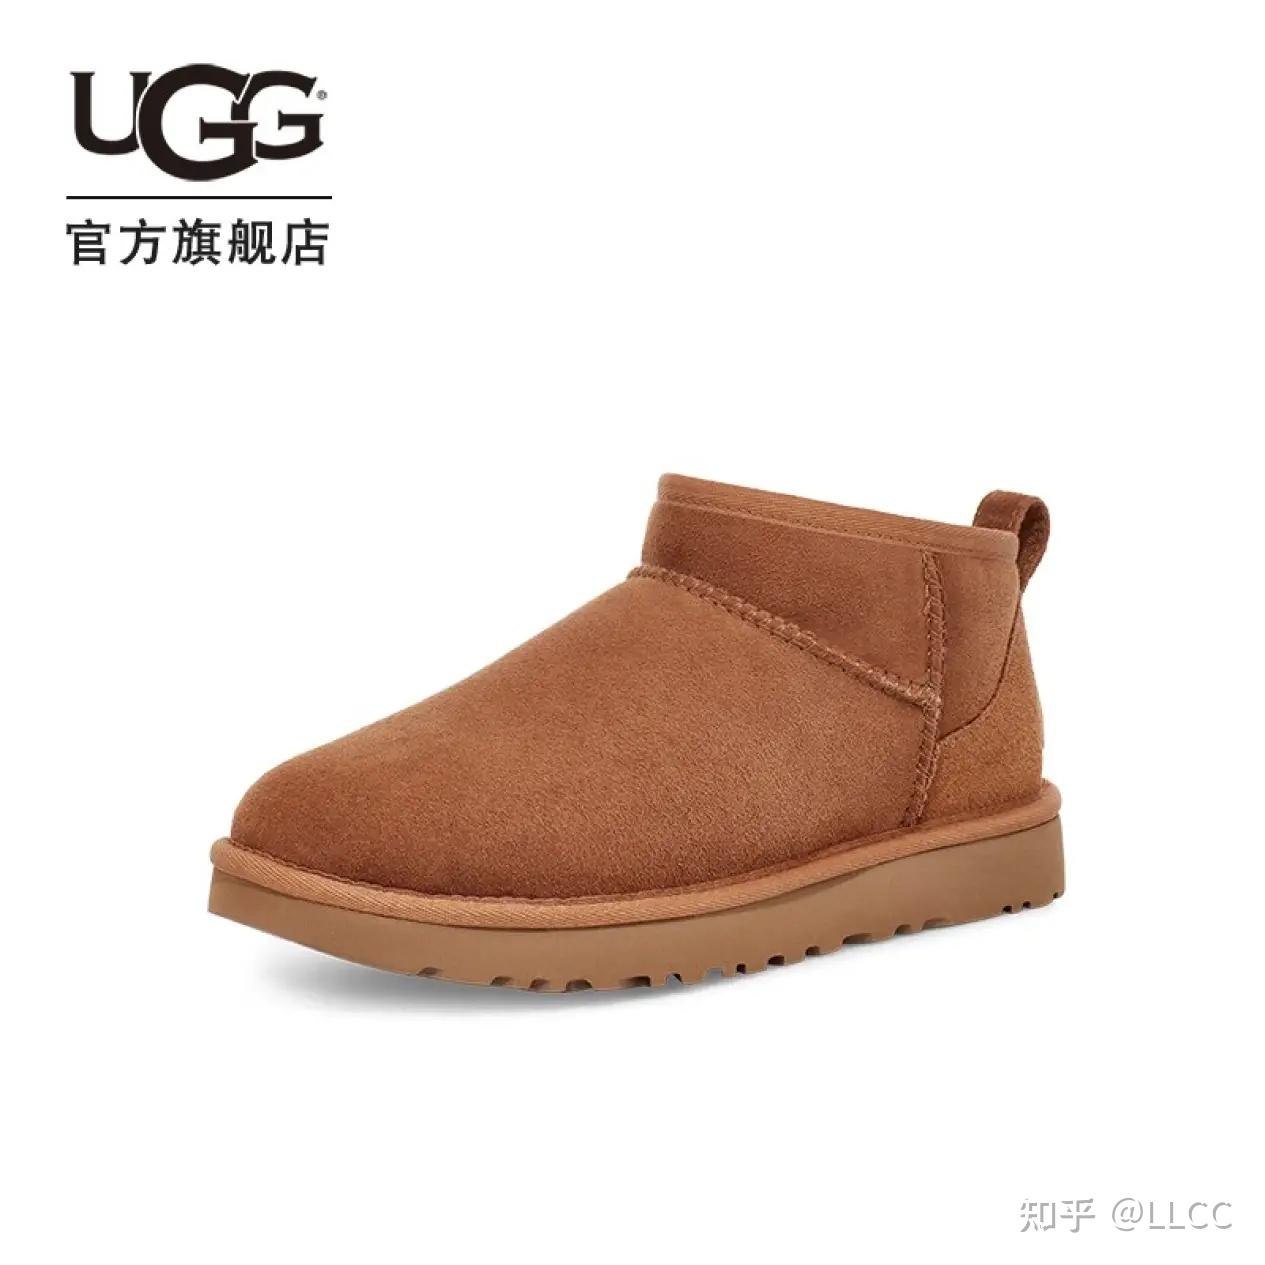 雪地靴除了UGG这样的高端品牌外，还有什么牌子质量不错，值得买的？ - 知乎